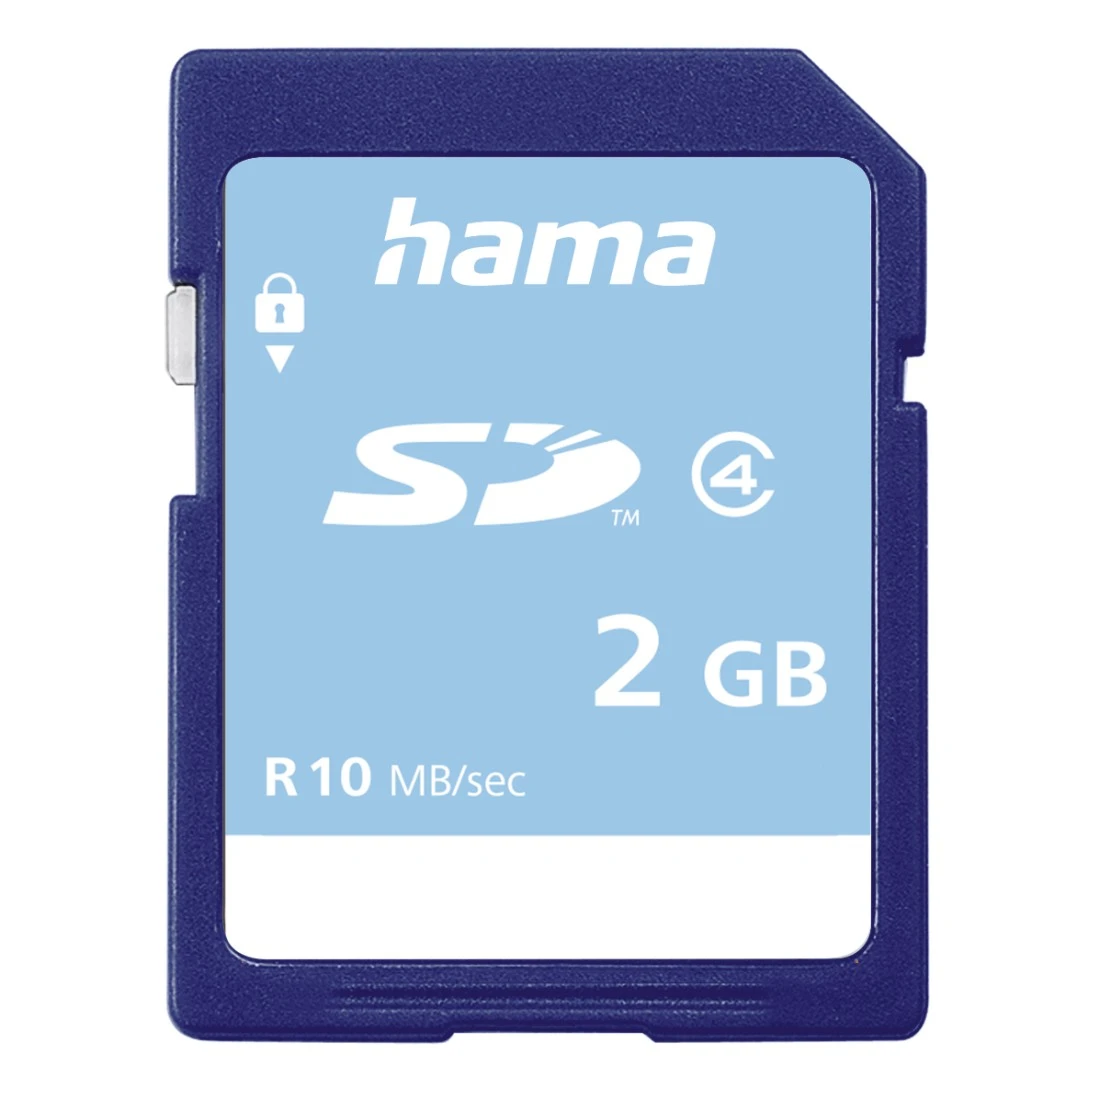 Carte mémoire SD, classe 4, 2GB